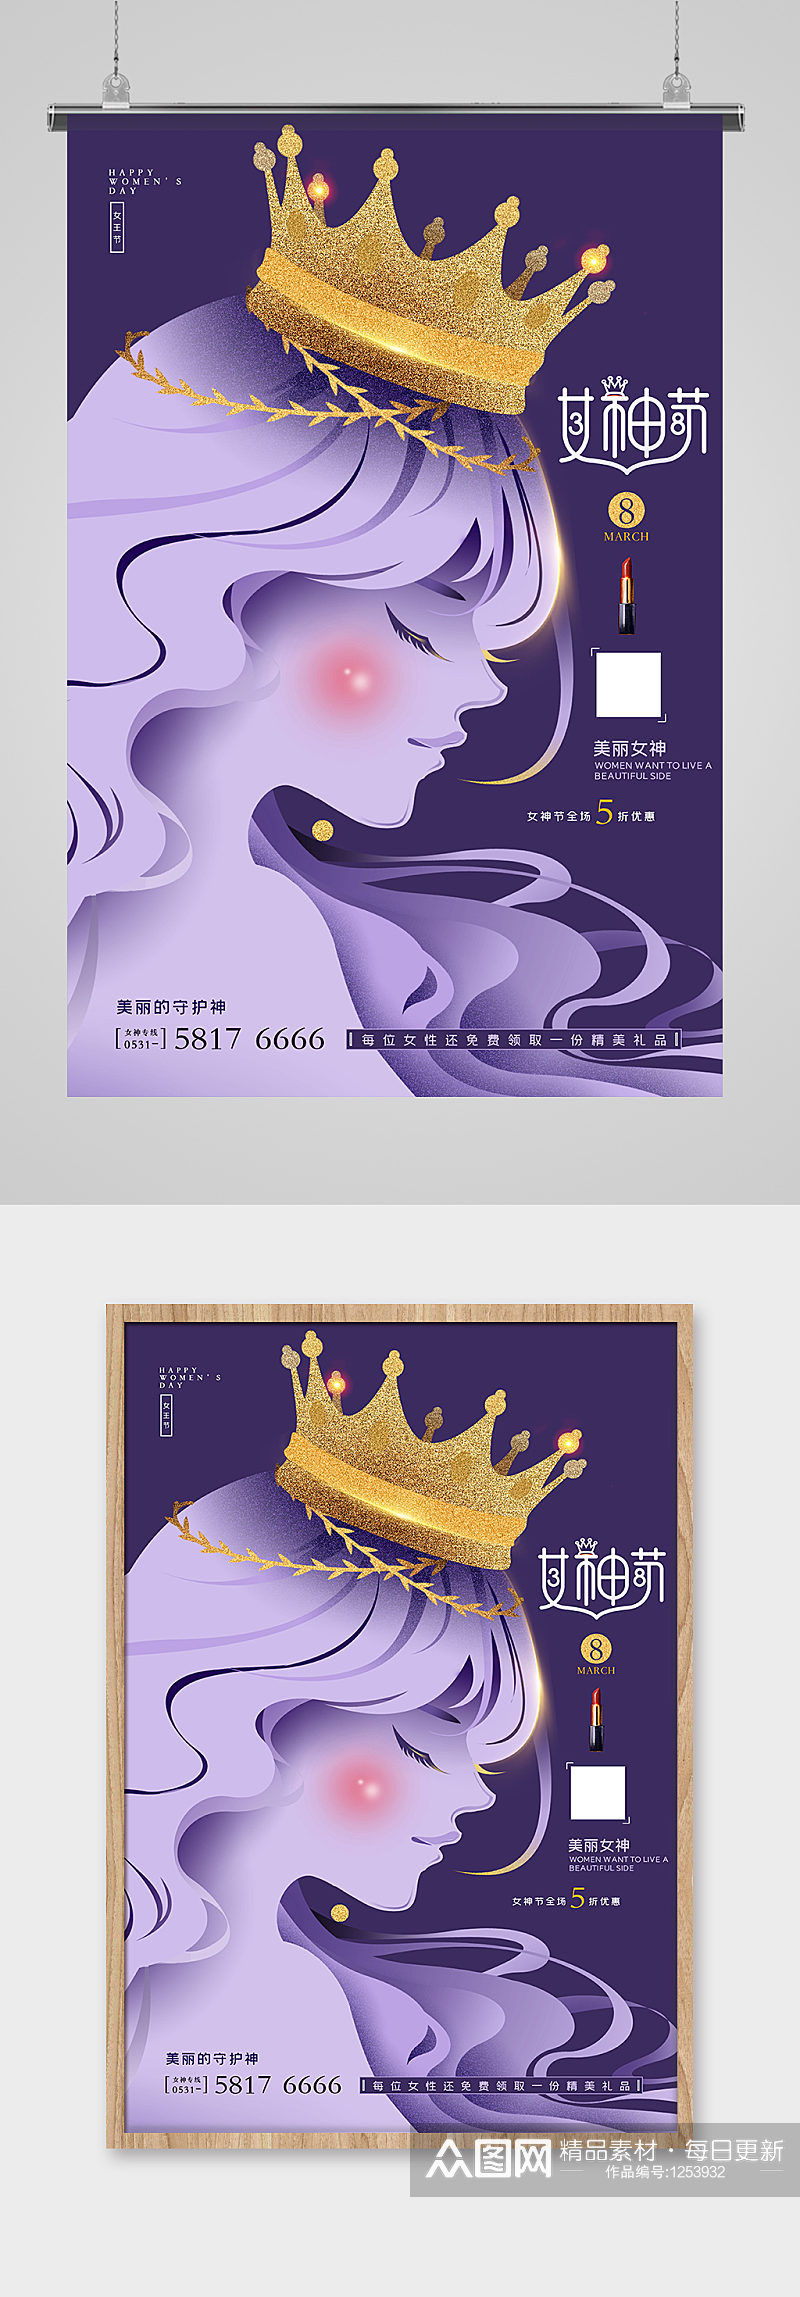 38女神节妇女节紫贵族所爱美容化妆品海报素材